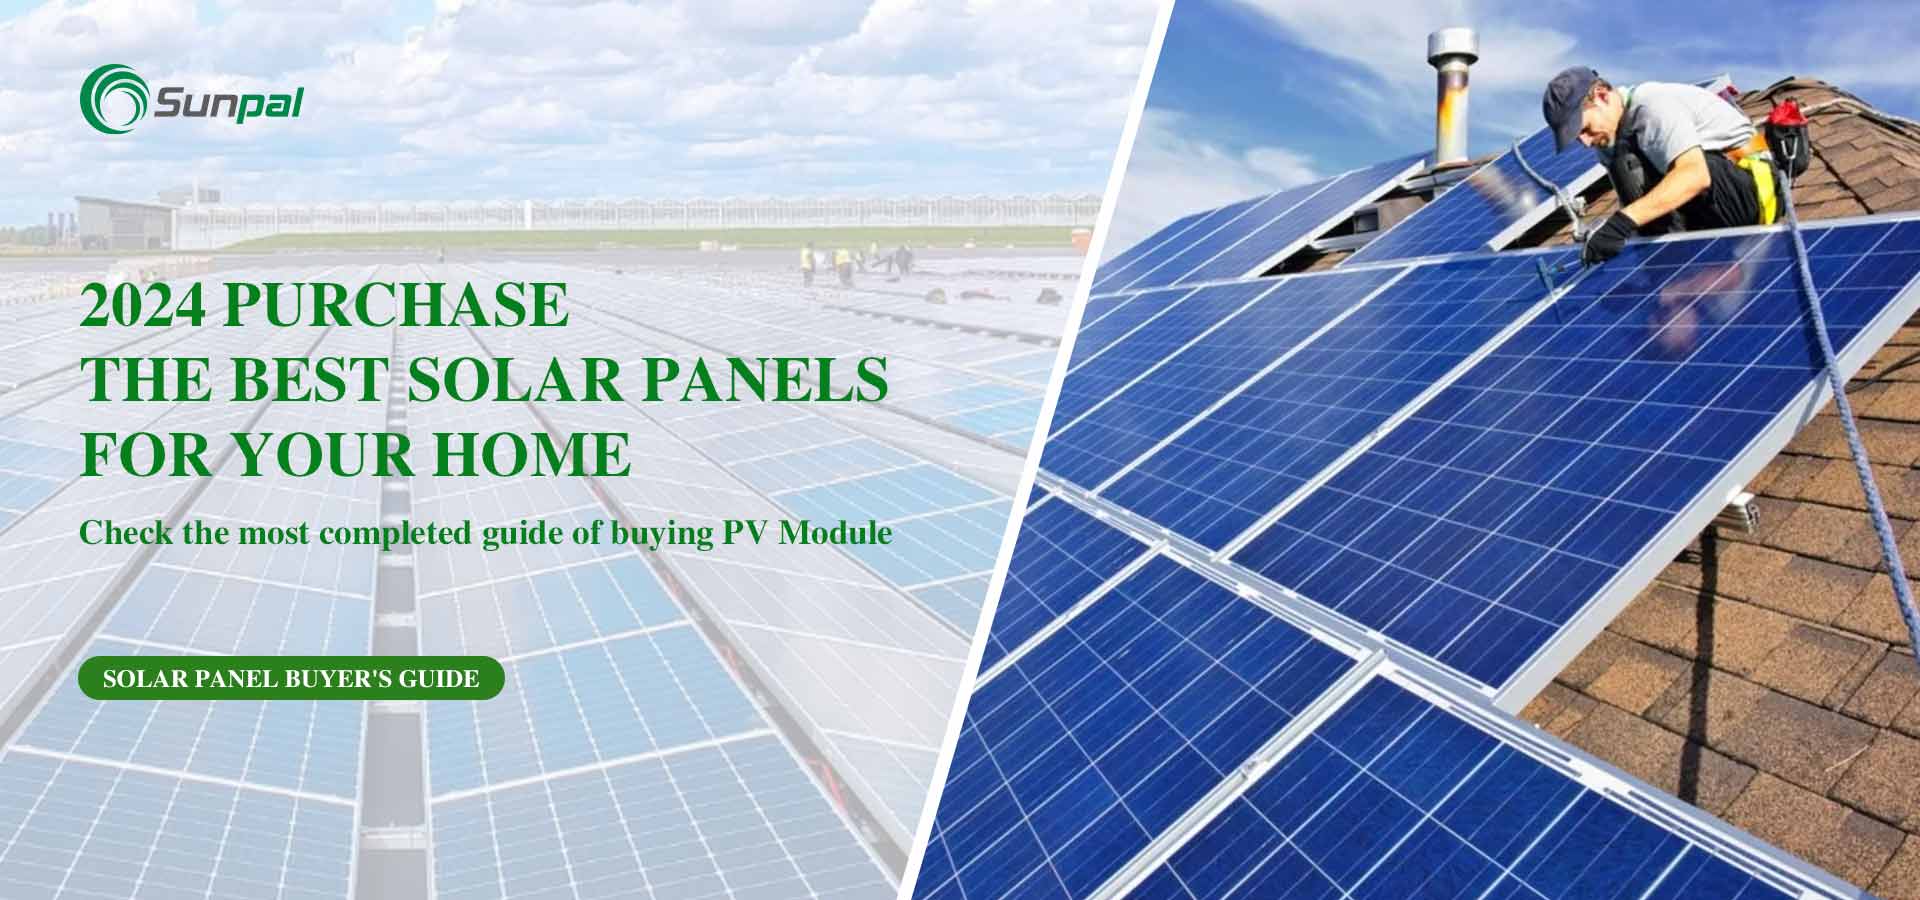 Os melhores painéis solares para sua casa em 2024: Guia do comprador